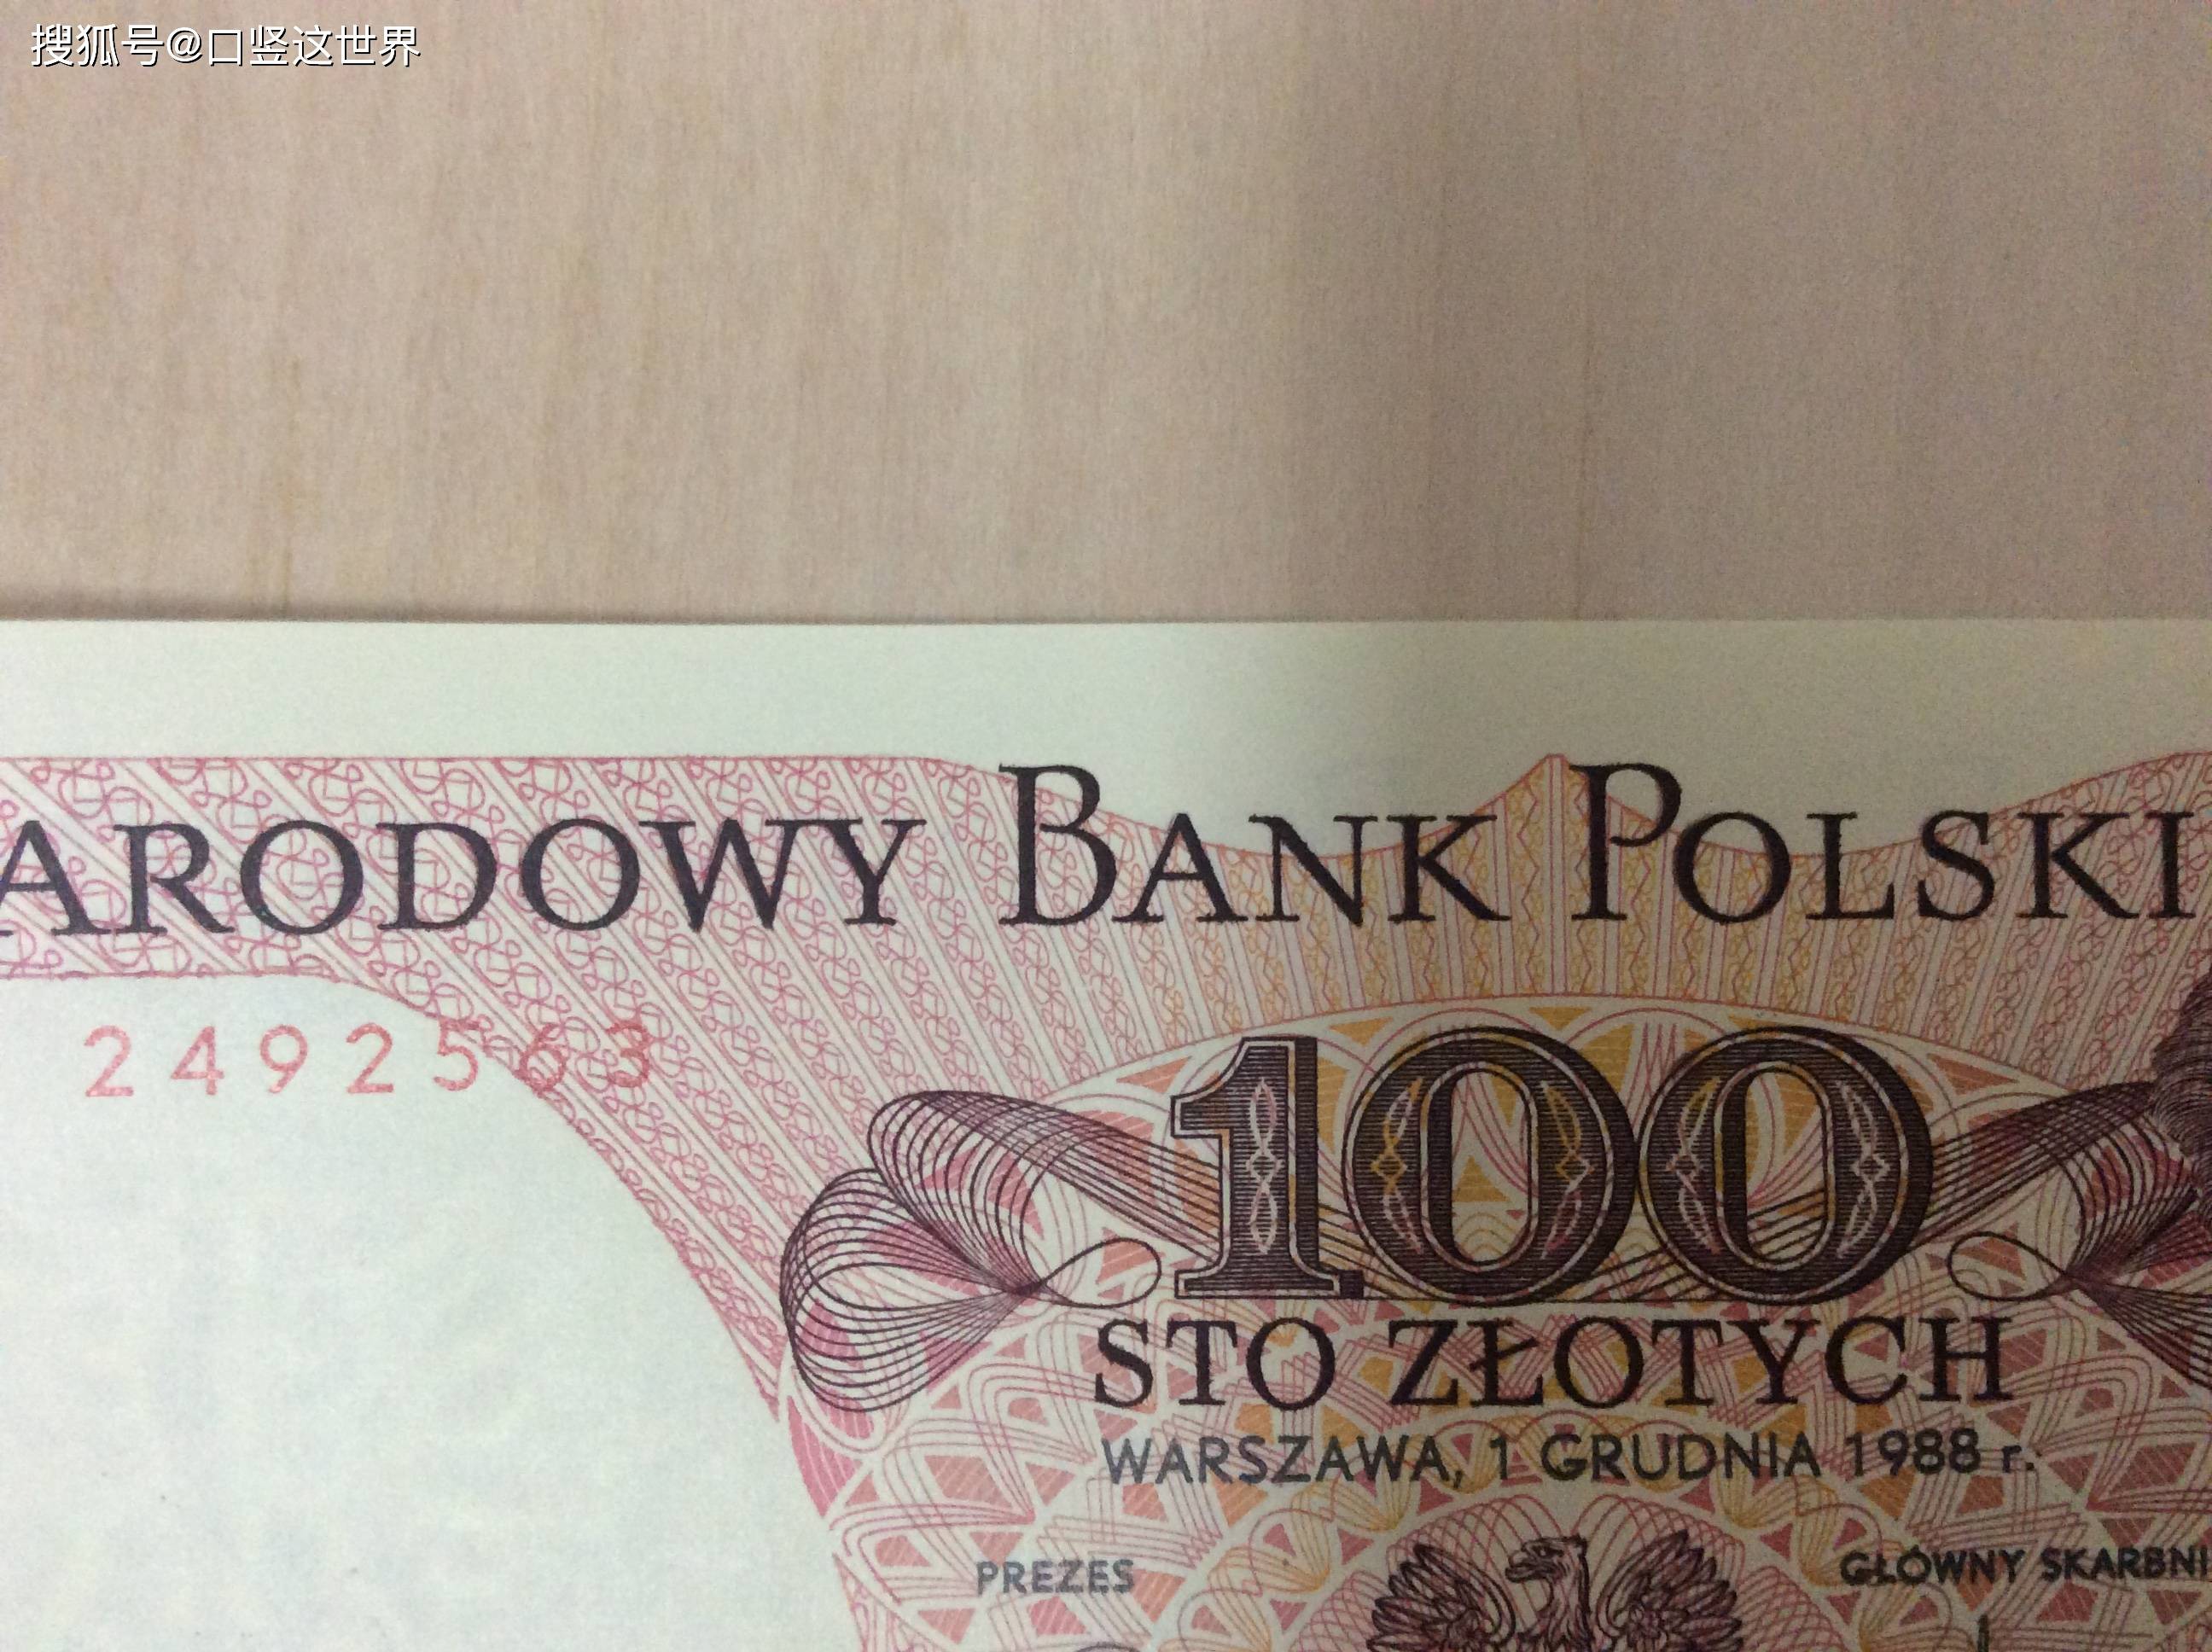 货币波兰 库存图片. 图片 包括有 货币, 编号, 图表, 生活, 收入, 数据, 特写镜头, 投资, 金子 - 24353089